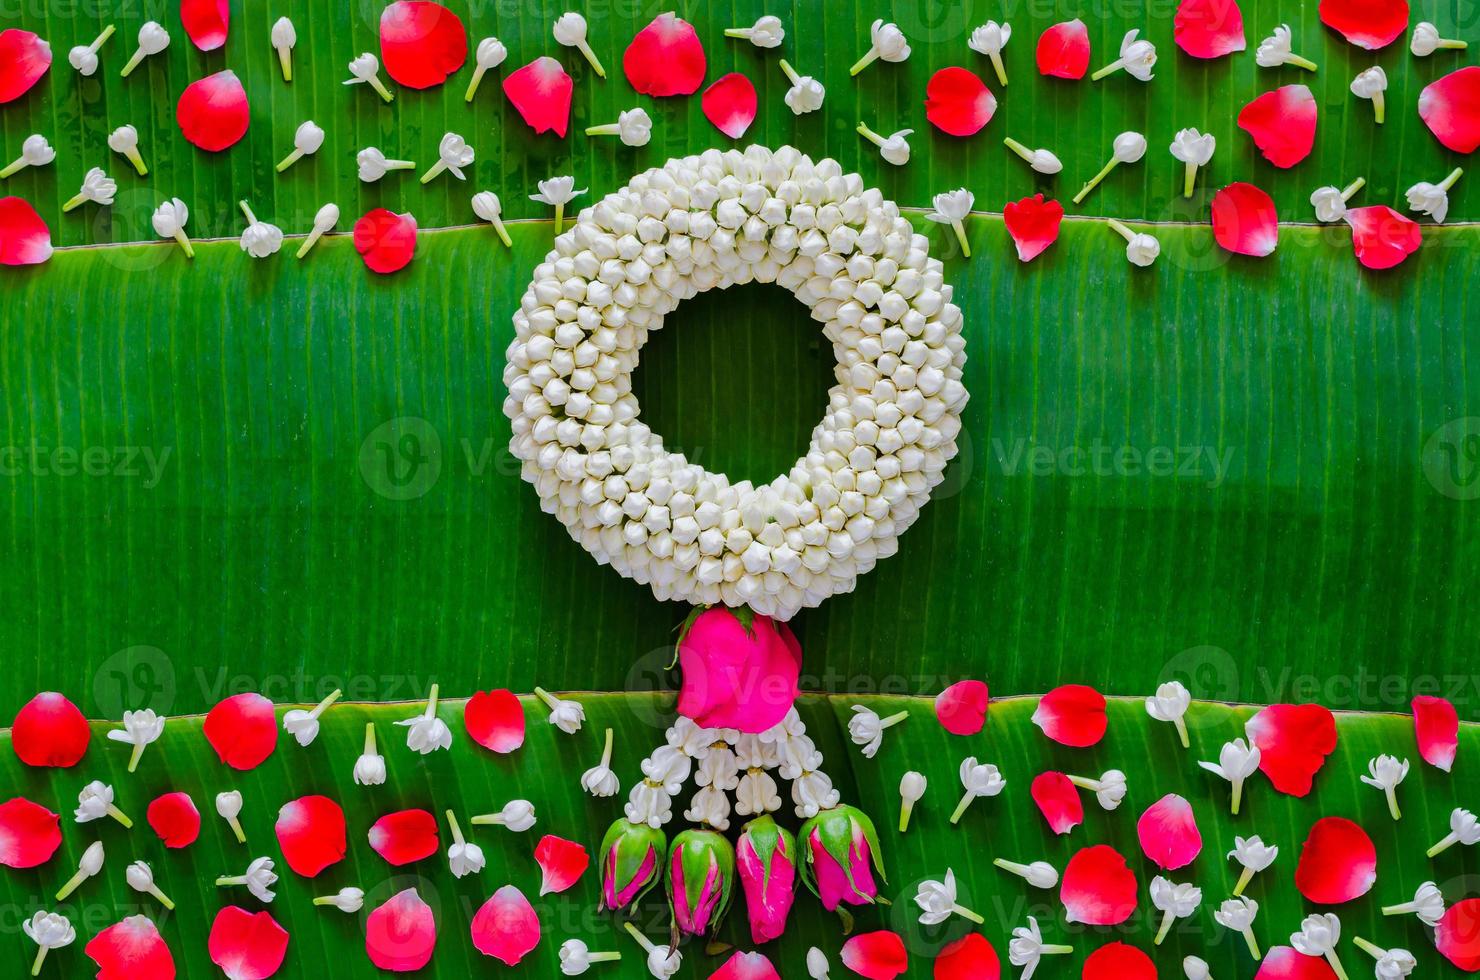 songkran festival bakgrund med jasmin krans och blommor på banan blad bakgrund. foto